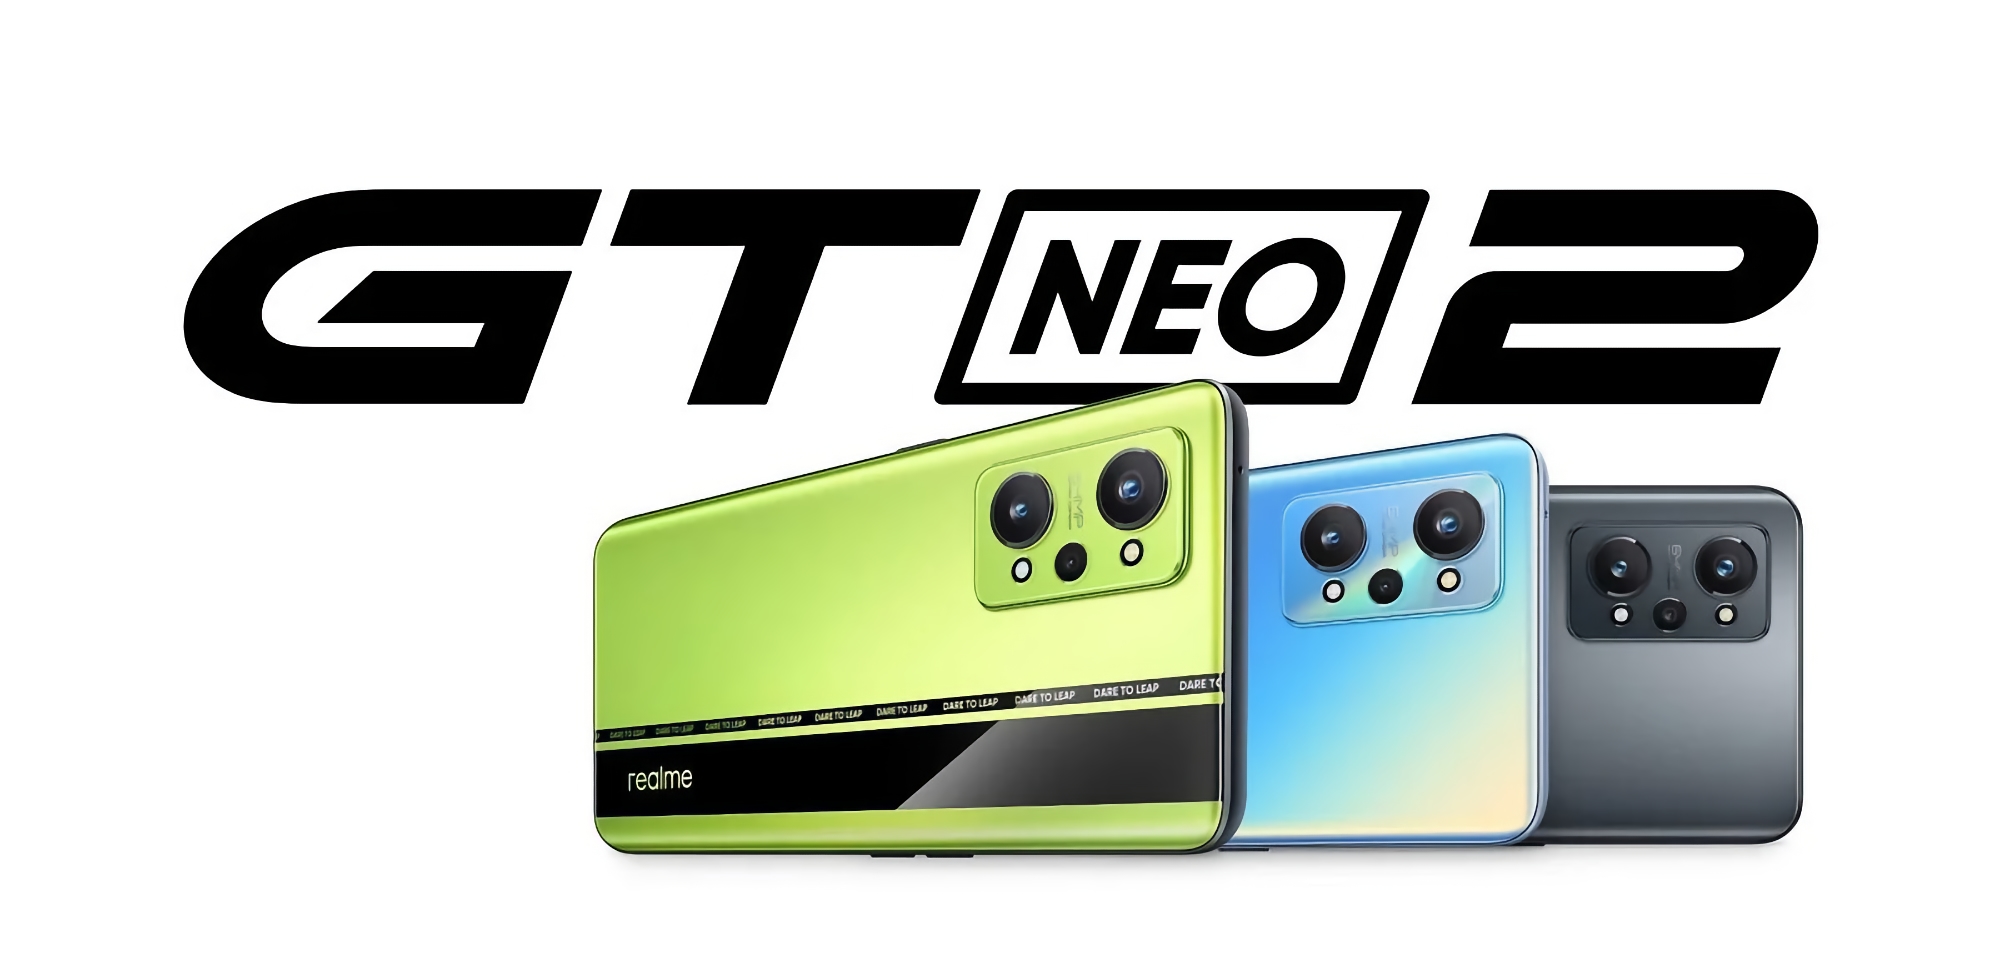 È ufficiale: Realme GT Neo 2 con chip Snapdragon 870 e tripla fotocamera da 64 MP svelato in Europa il 15 novembre